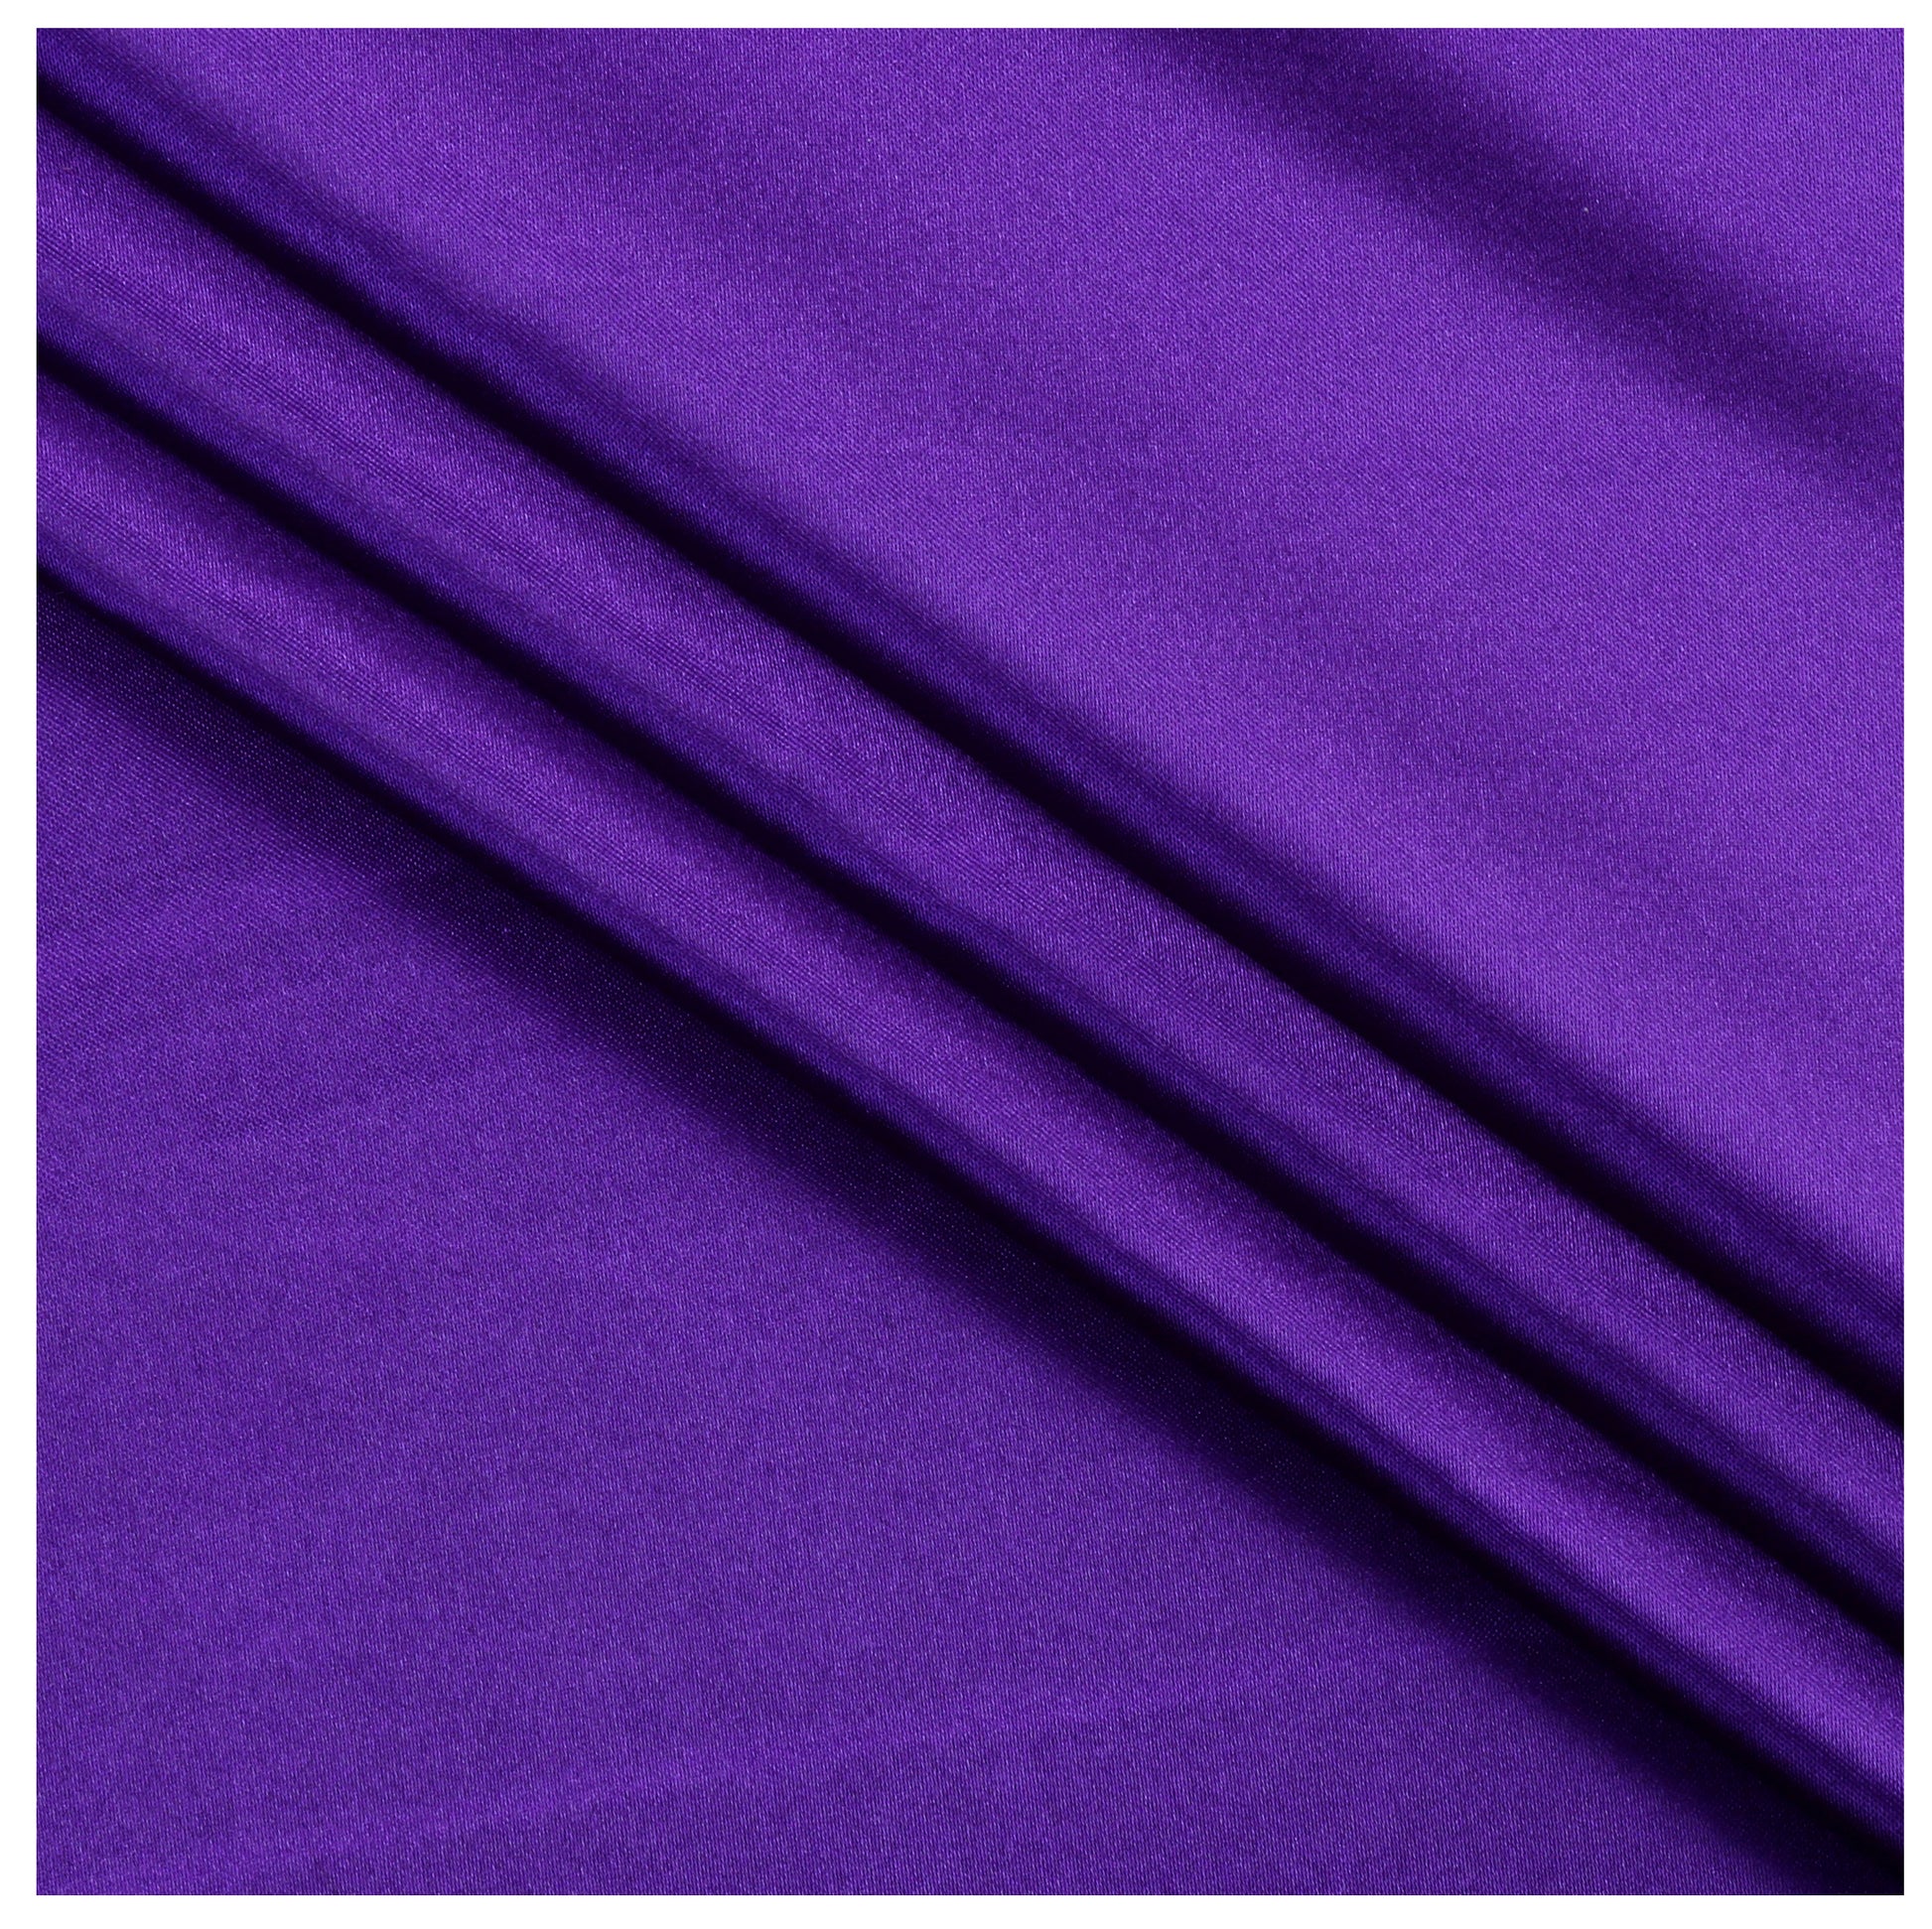 Cadbury Purple,5515ecf0-a4bb-4e83-848c-e83c754d78fb